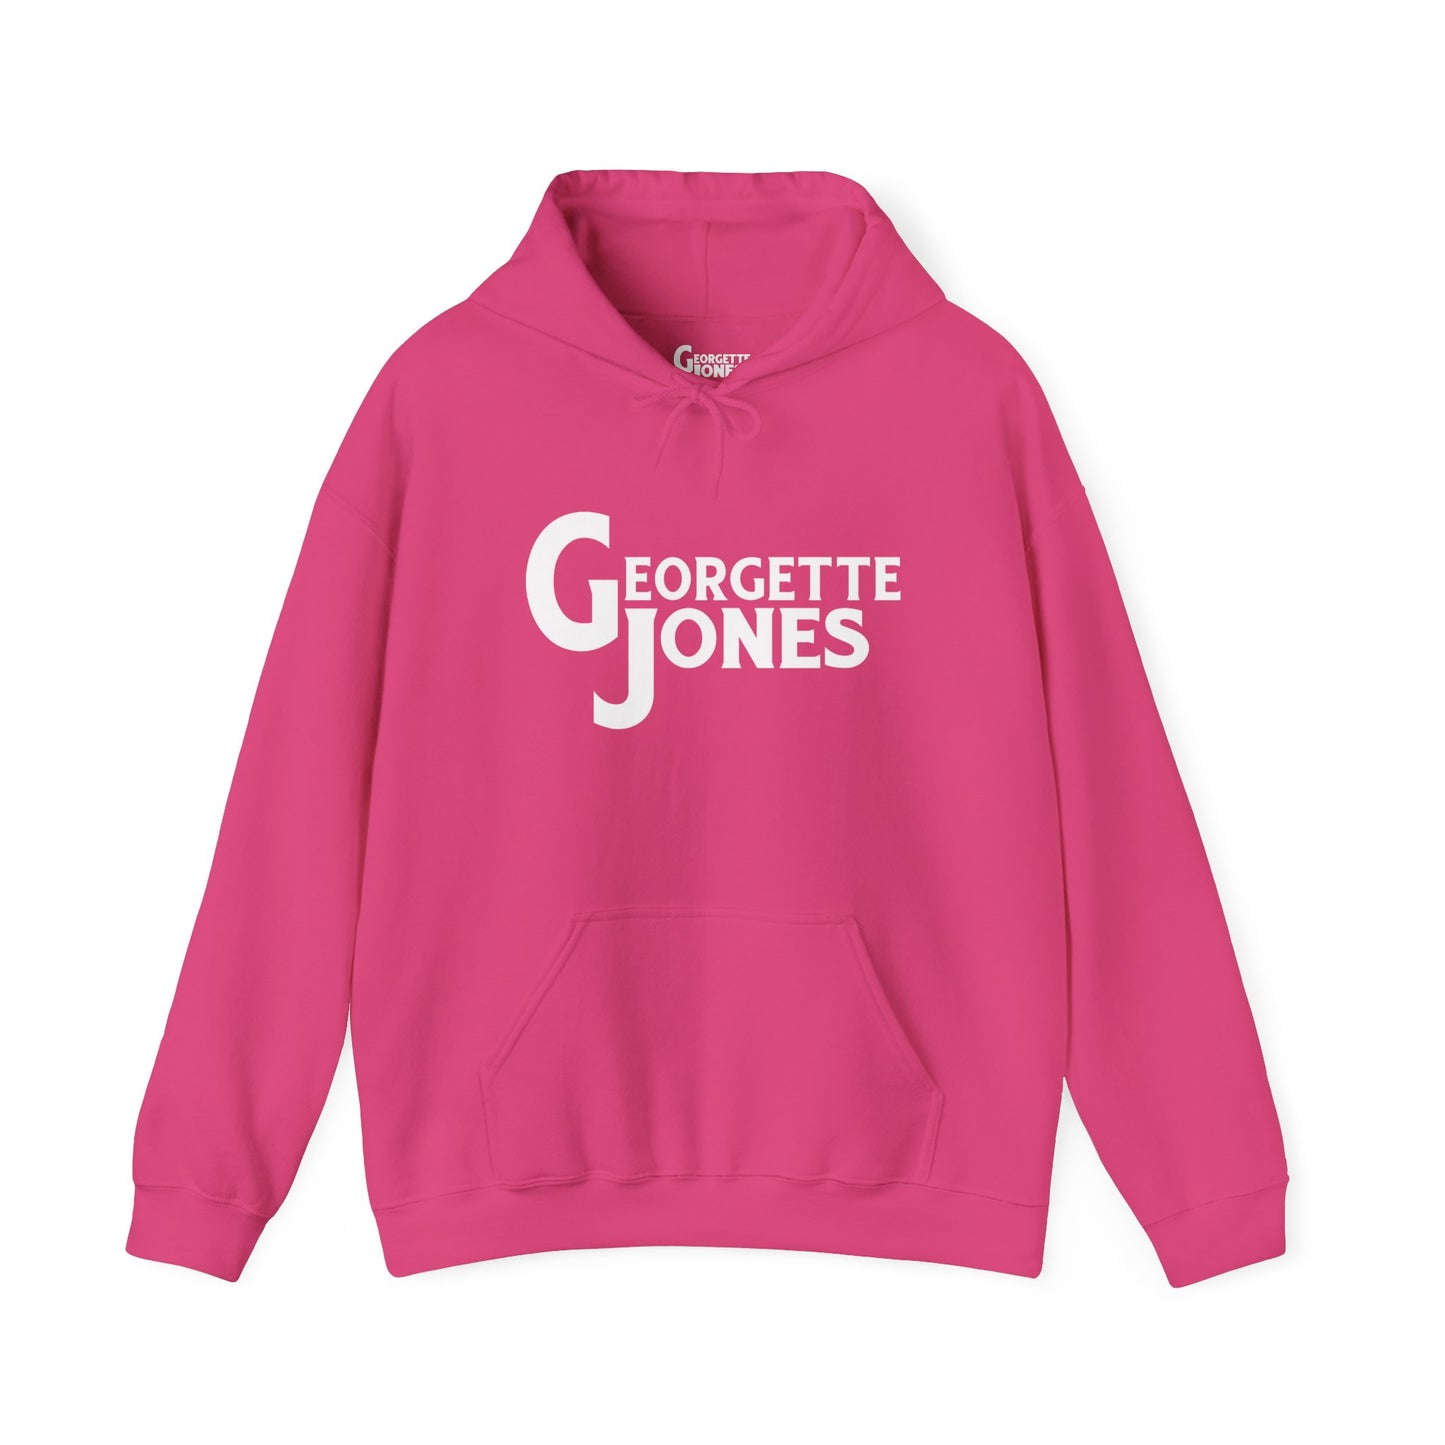 Georgette Jones Brand Logo - Unisex Hoodie